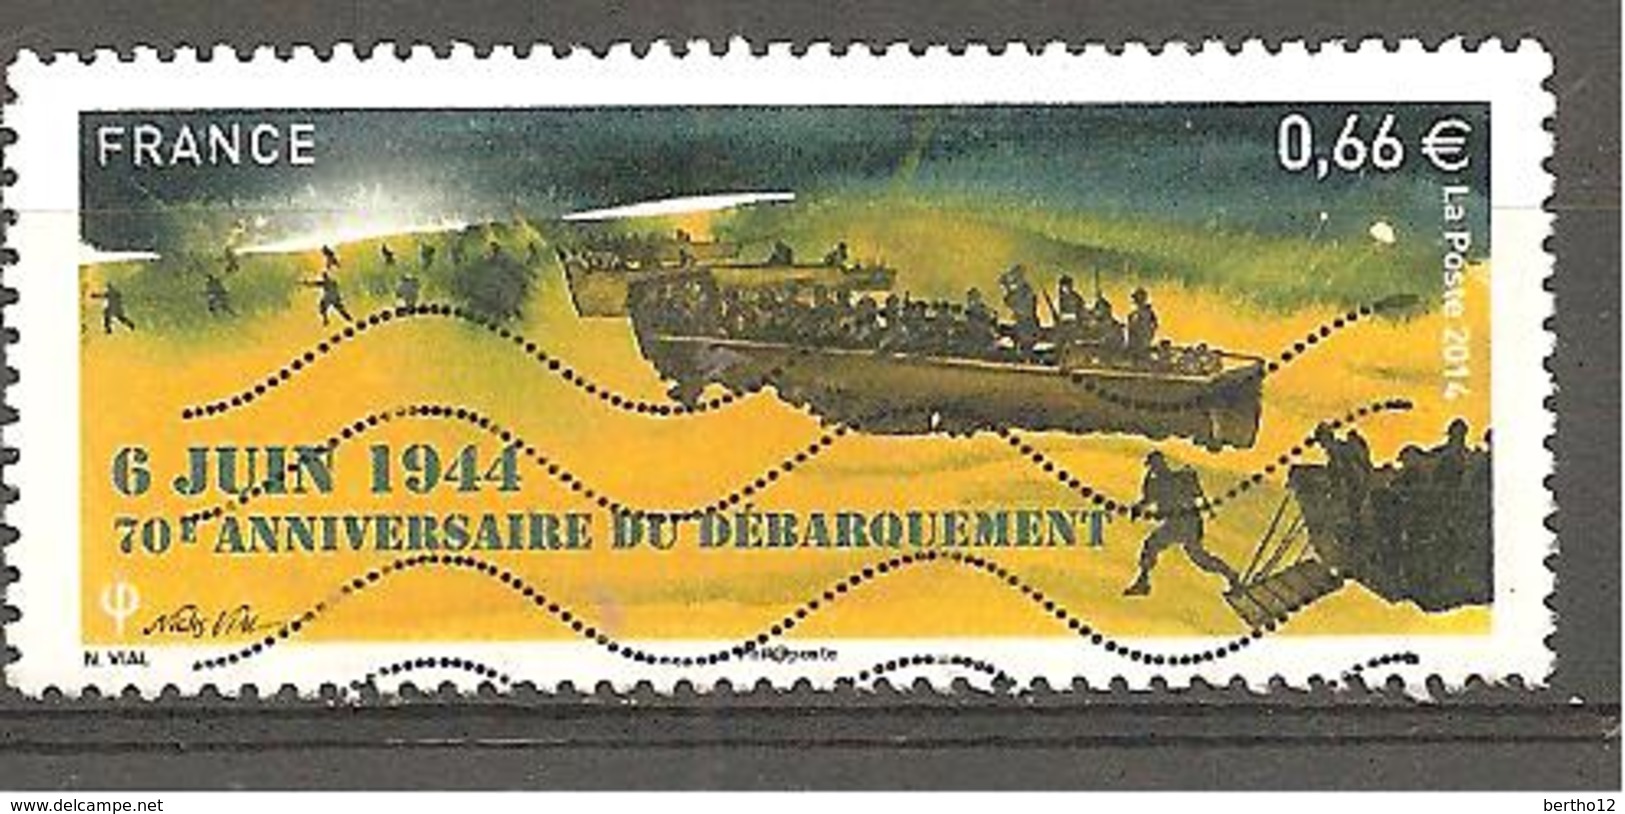 FRANCE 2014 Y&T N° 4863 Timbre Oblitéré 6 JUIN 1944 70 E ANNIVERSAIRE DU DEBARQUEMENT - Used Stamps